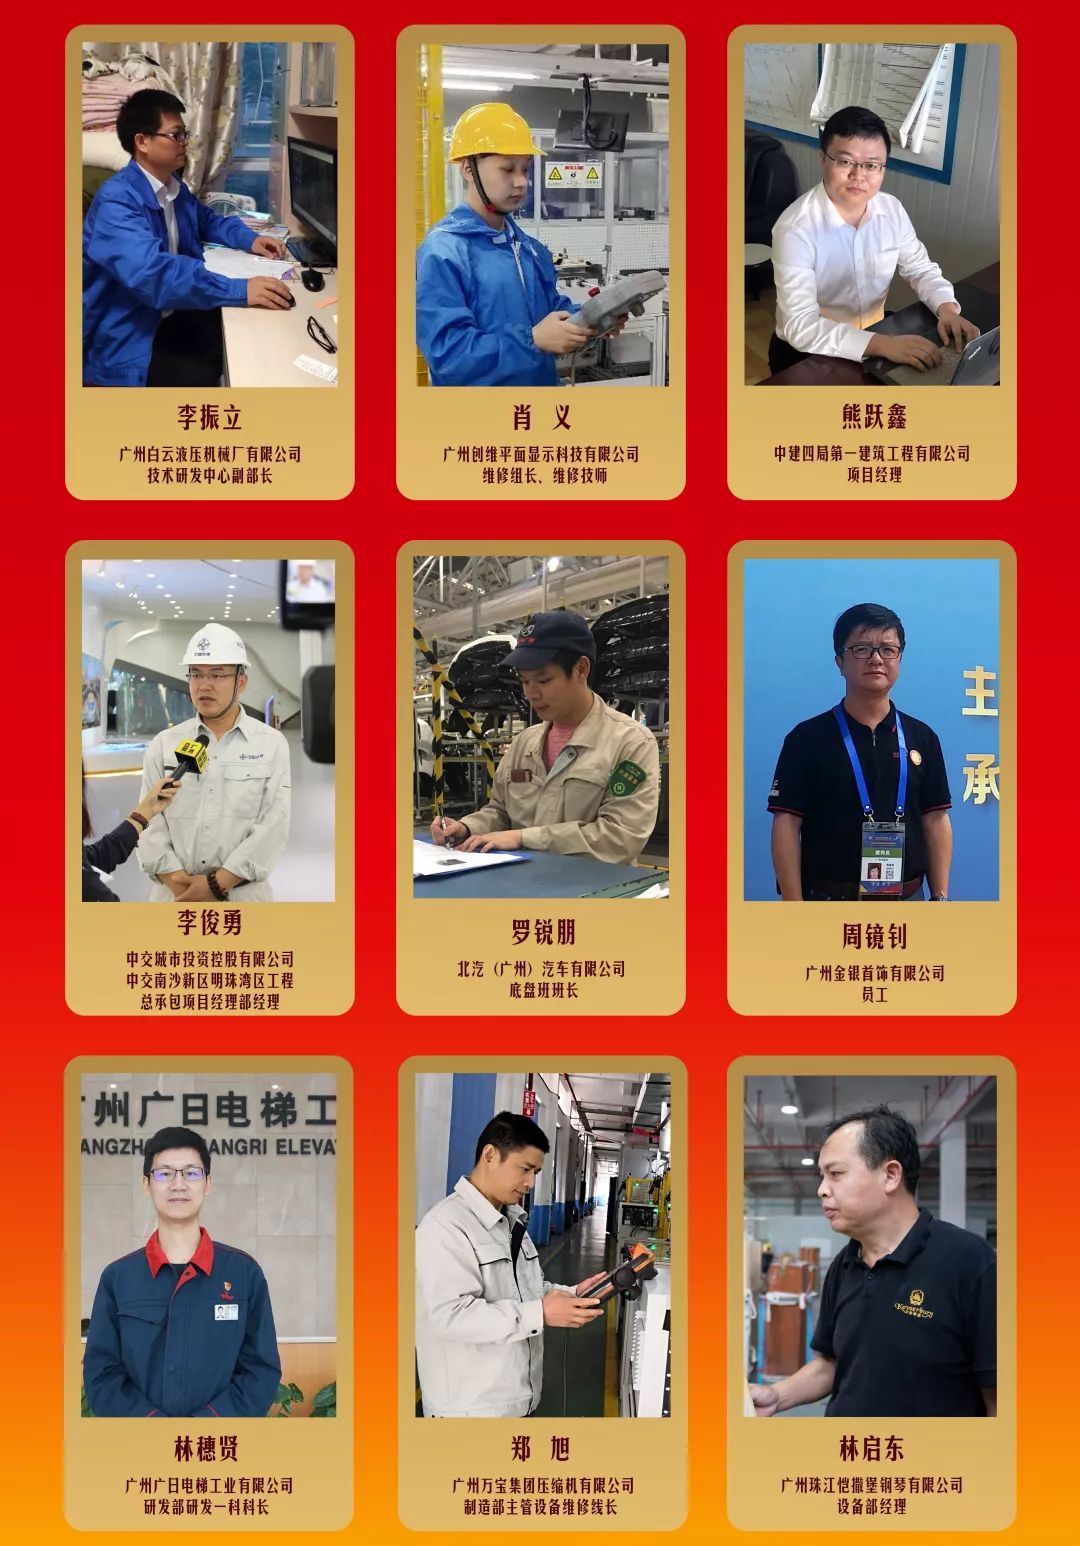 【信息速递】广州劳模图鉴|这么敬业,是新时代的奋斗者没错了!